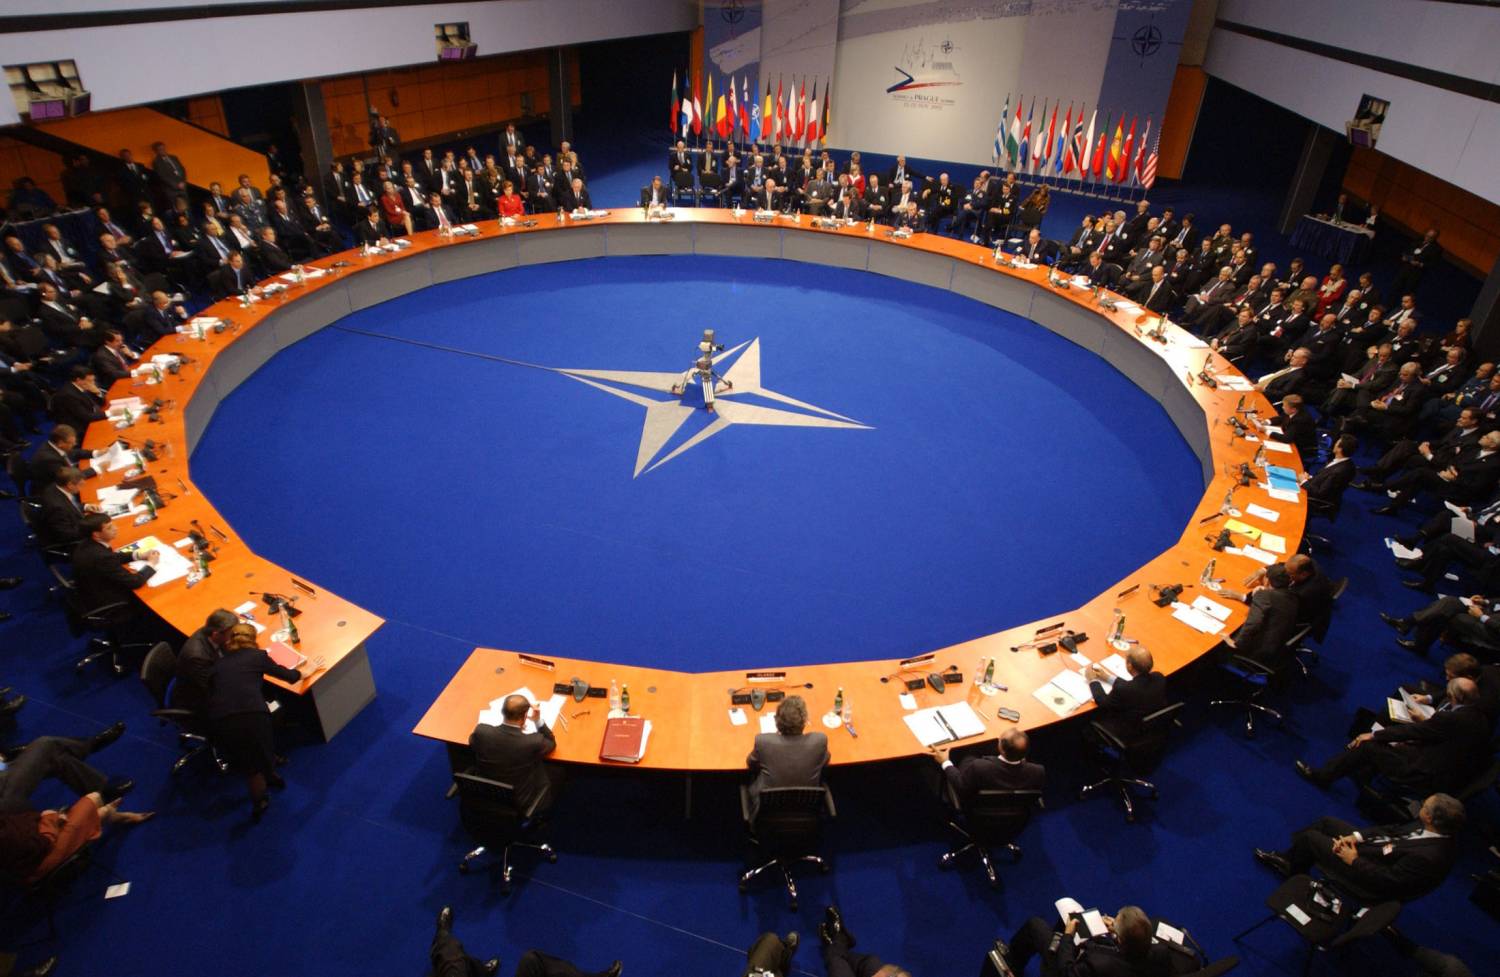 НАТО останется в Балтийском регионе до 2022 года